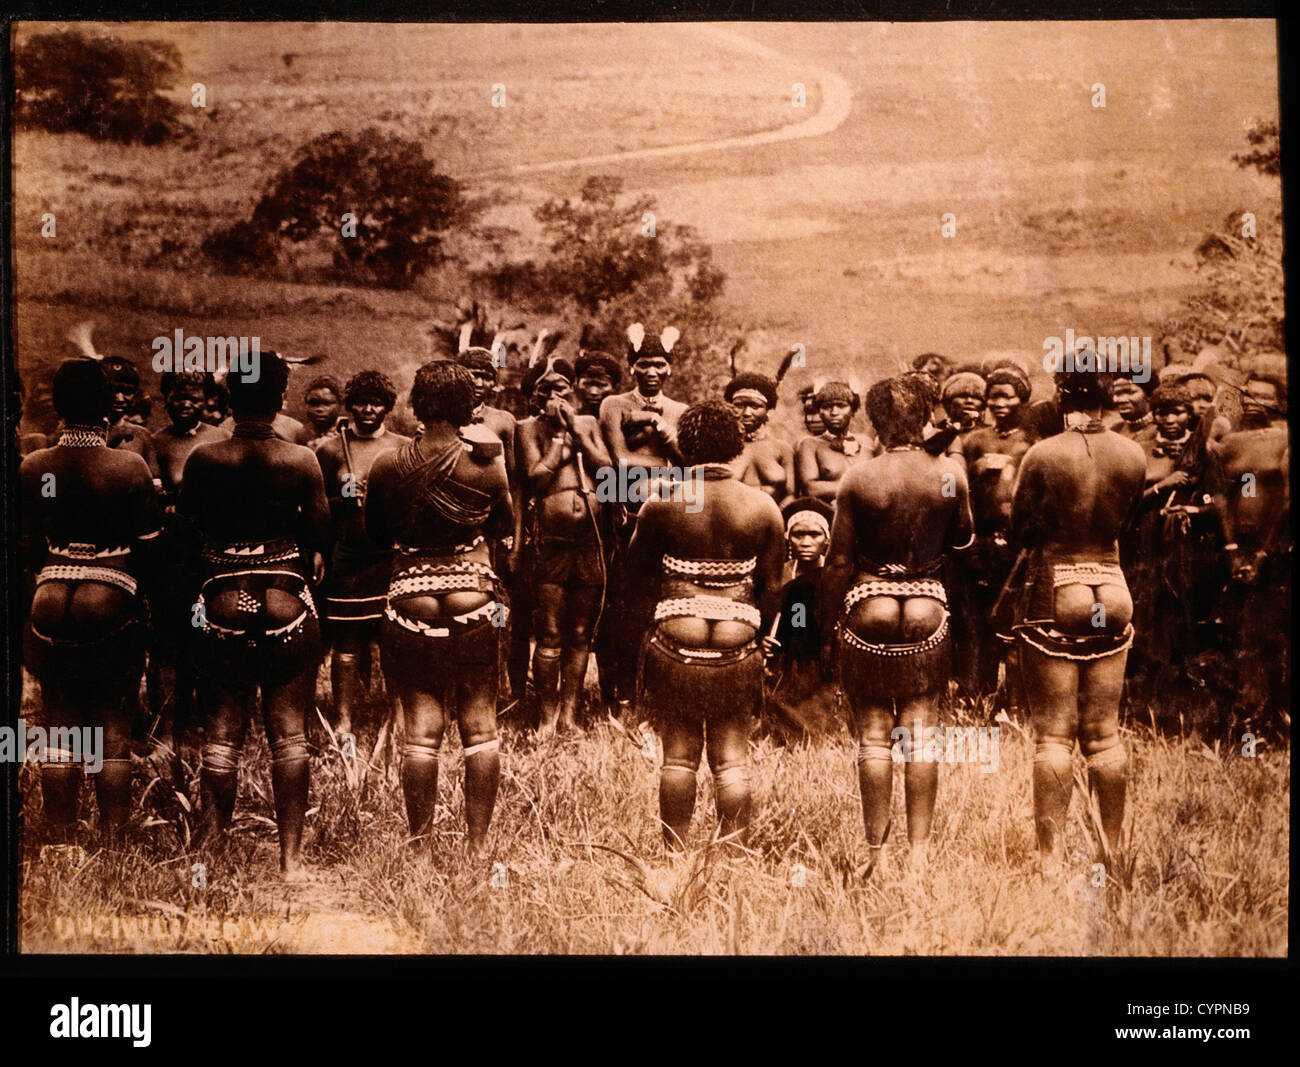 Groupe de guerriers zoulous et les femmes, Afrique du Sud, vers 1890 Banque D'Images